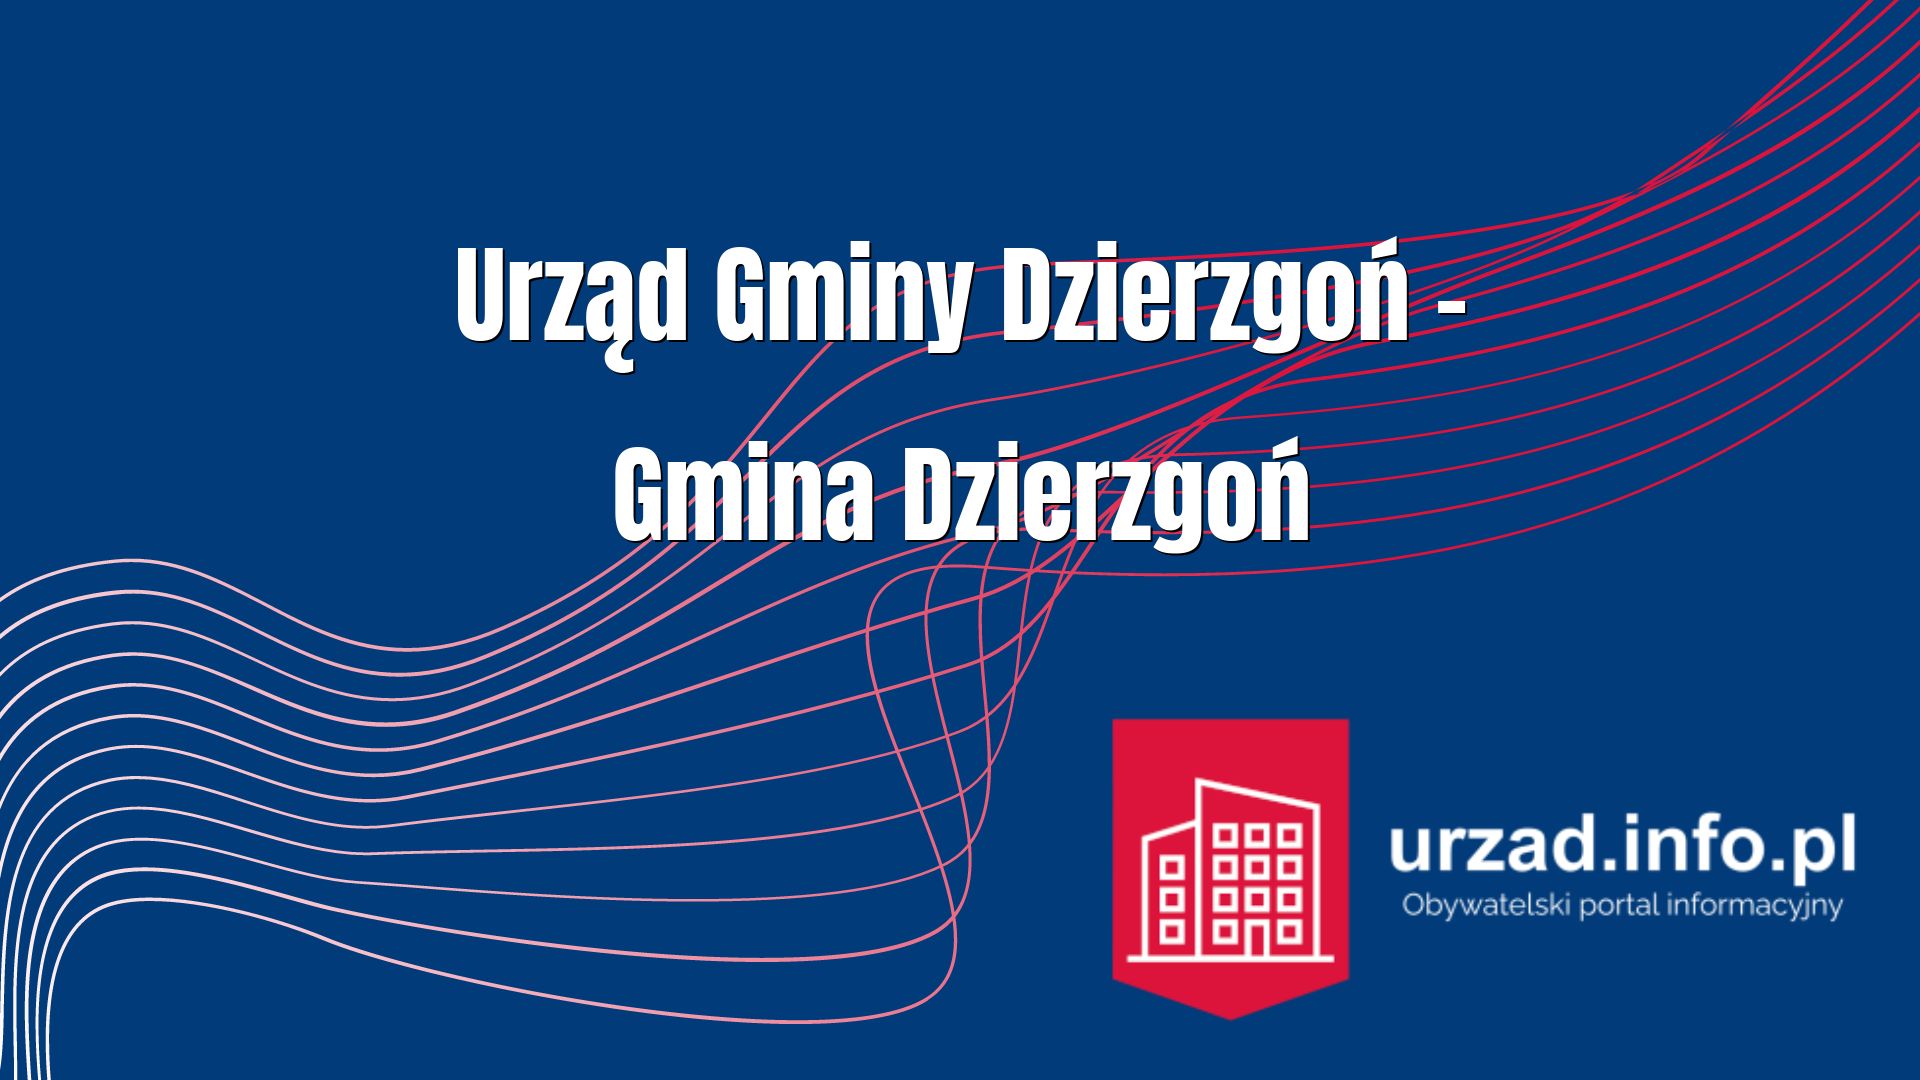 Urząd Gminy Dzierzgoń – Gmina Dzierzgoń